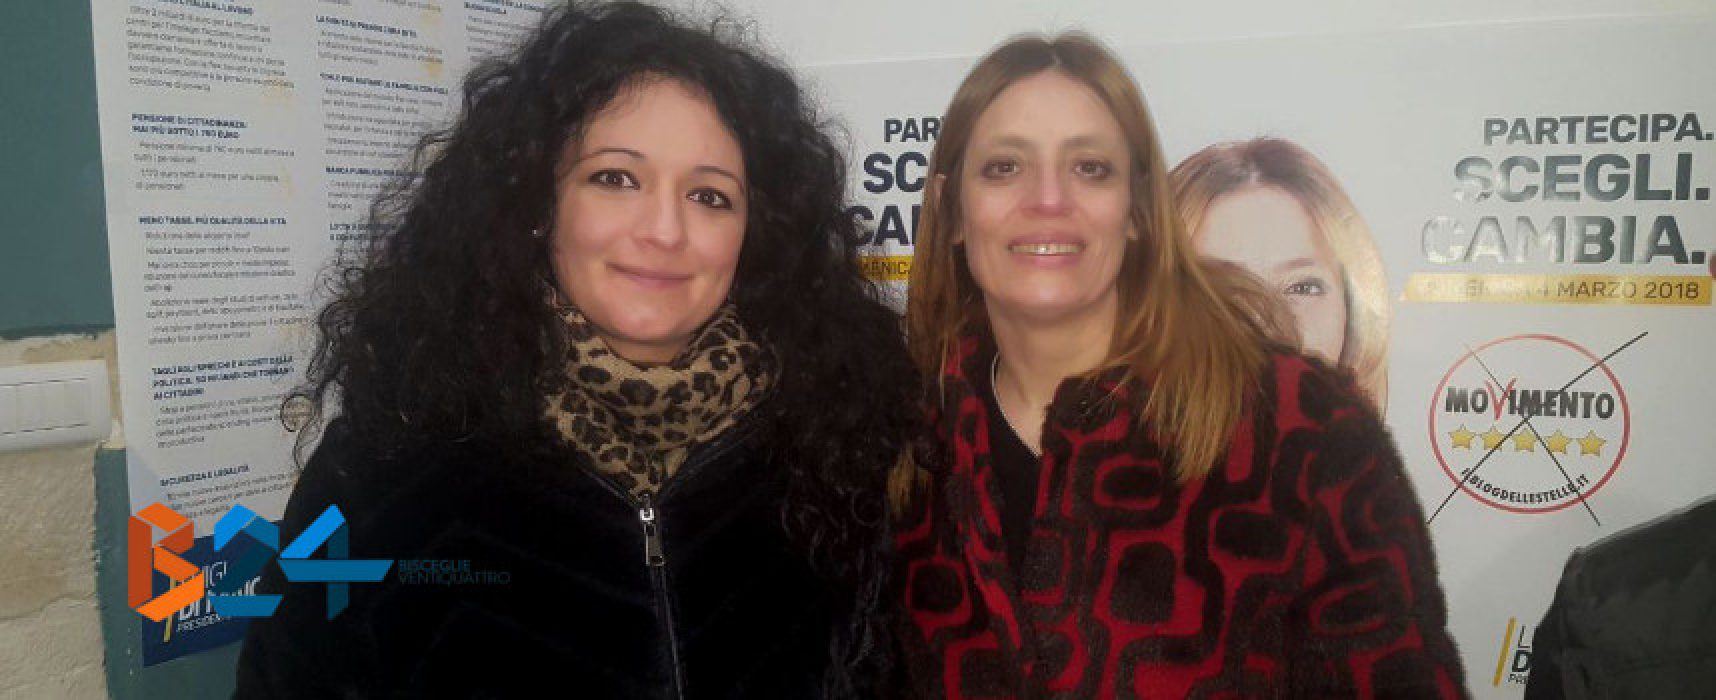 Movimento cinque stelle, incontro pubblico con le candidate Galizia e Piarulli